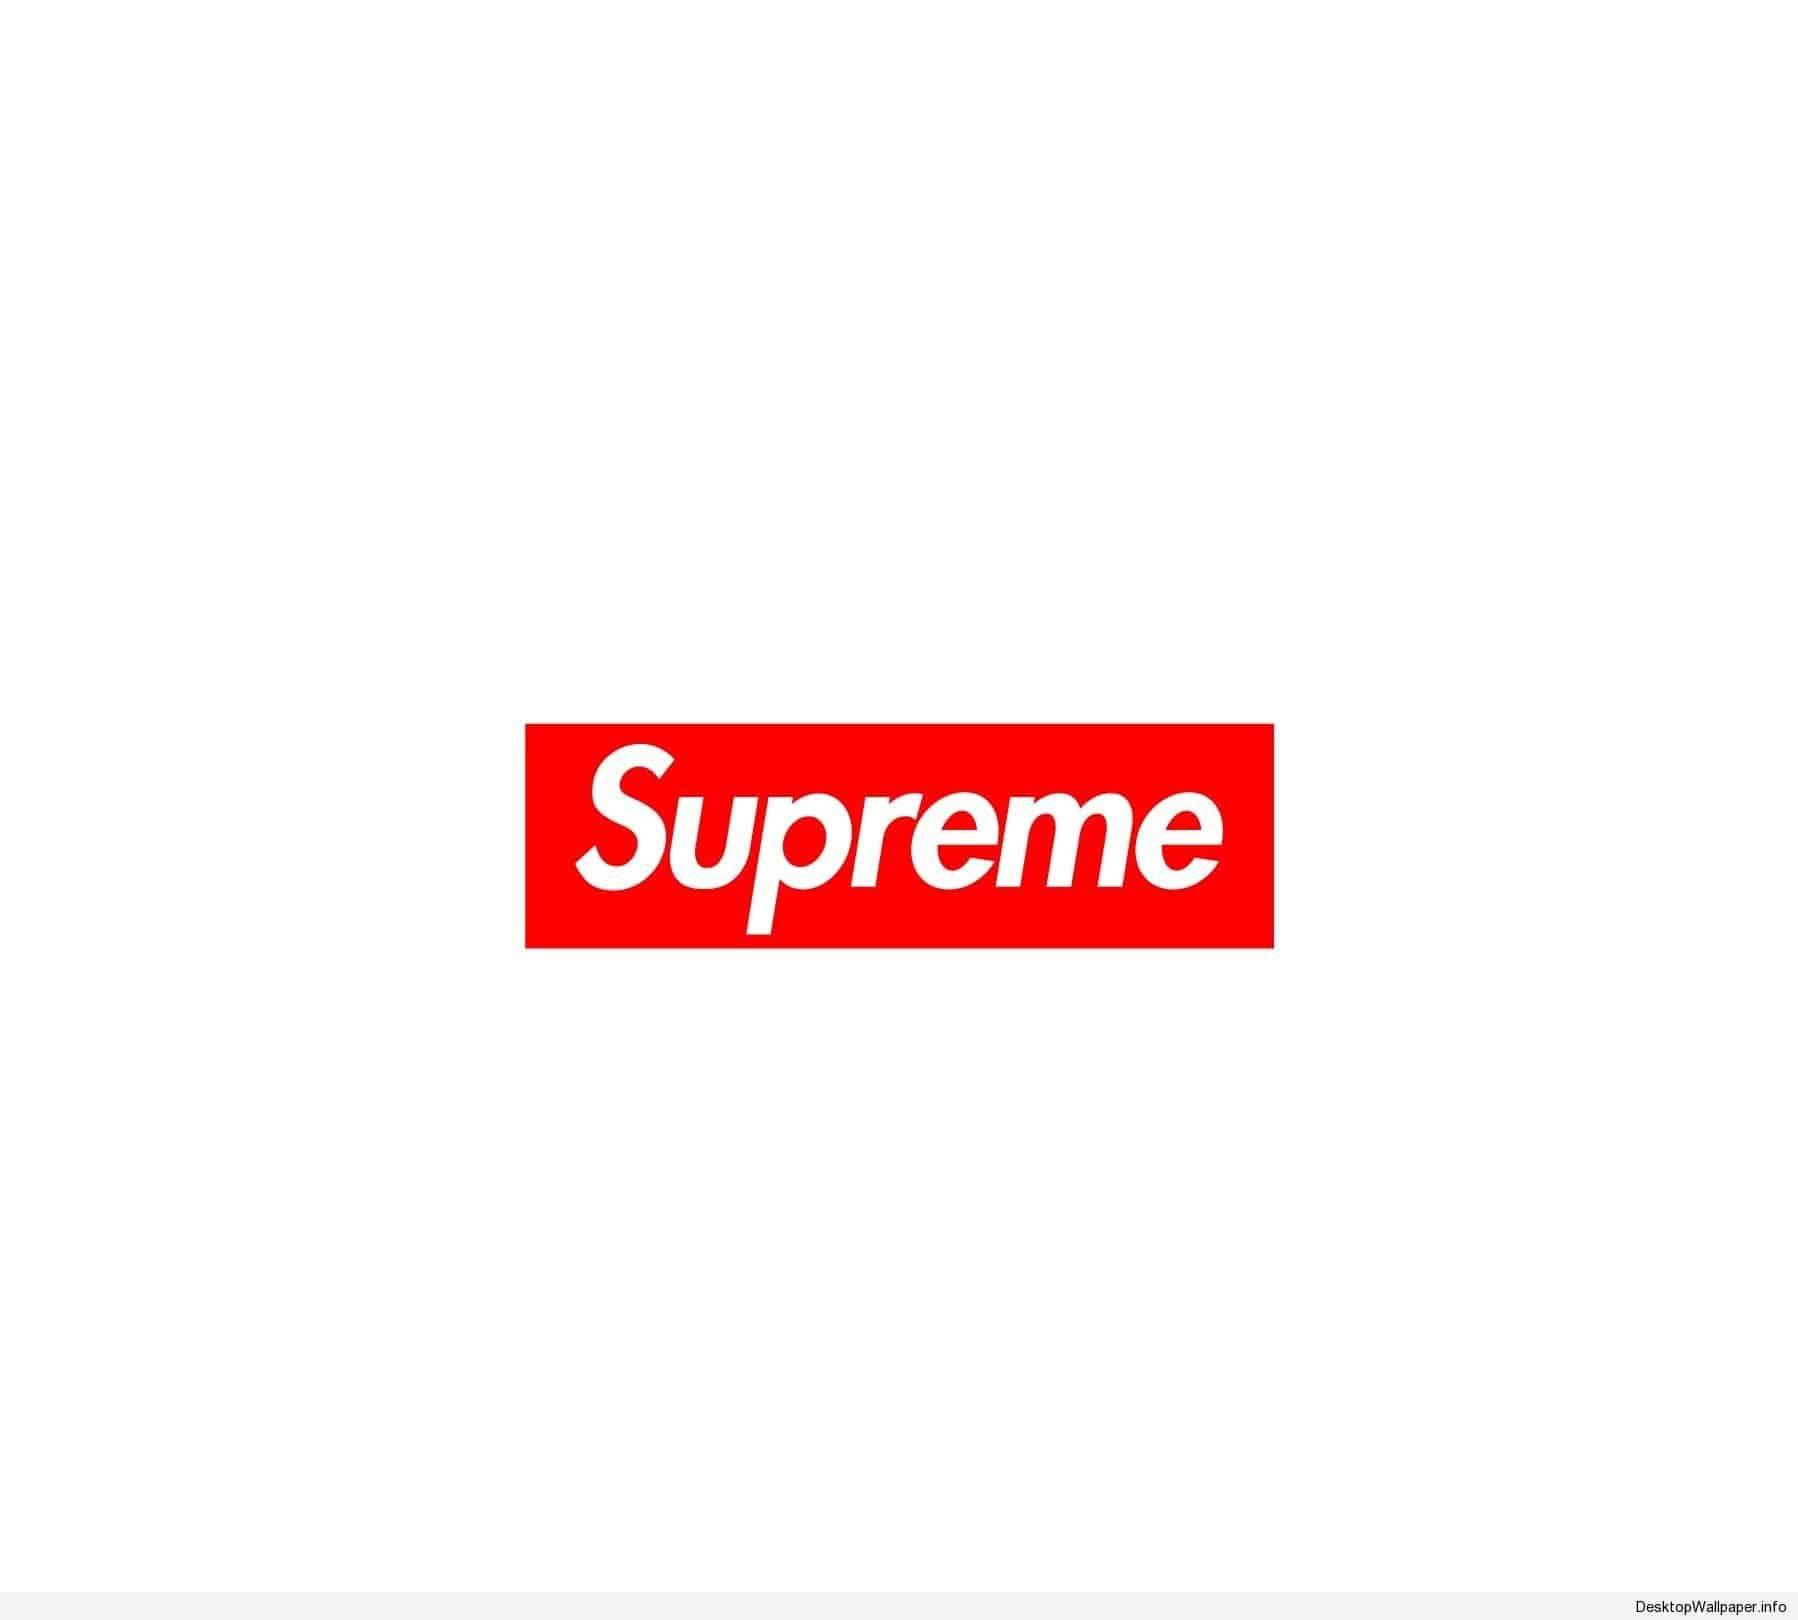 Snke Supreme Box Logo - Pin by julia on HD Wallpapers in 2019 | Pinterest | Logo wallpaper ...